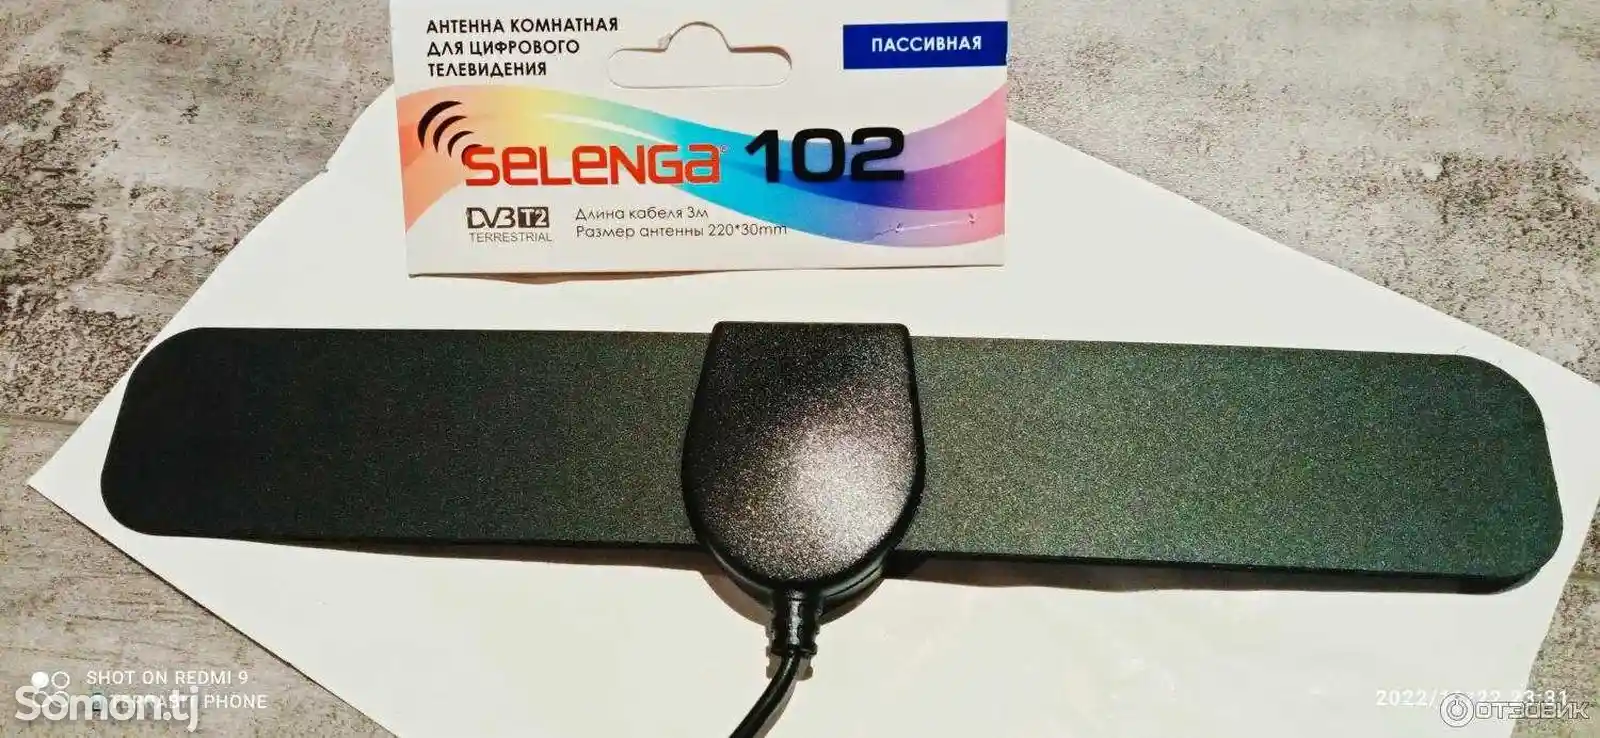 Антенна комнатная Selenga 102 - Пропеллер для приёма DVB-T2 сигнала-2